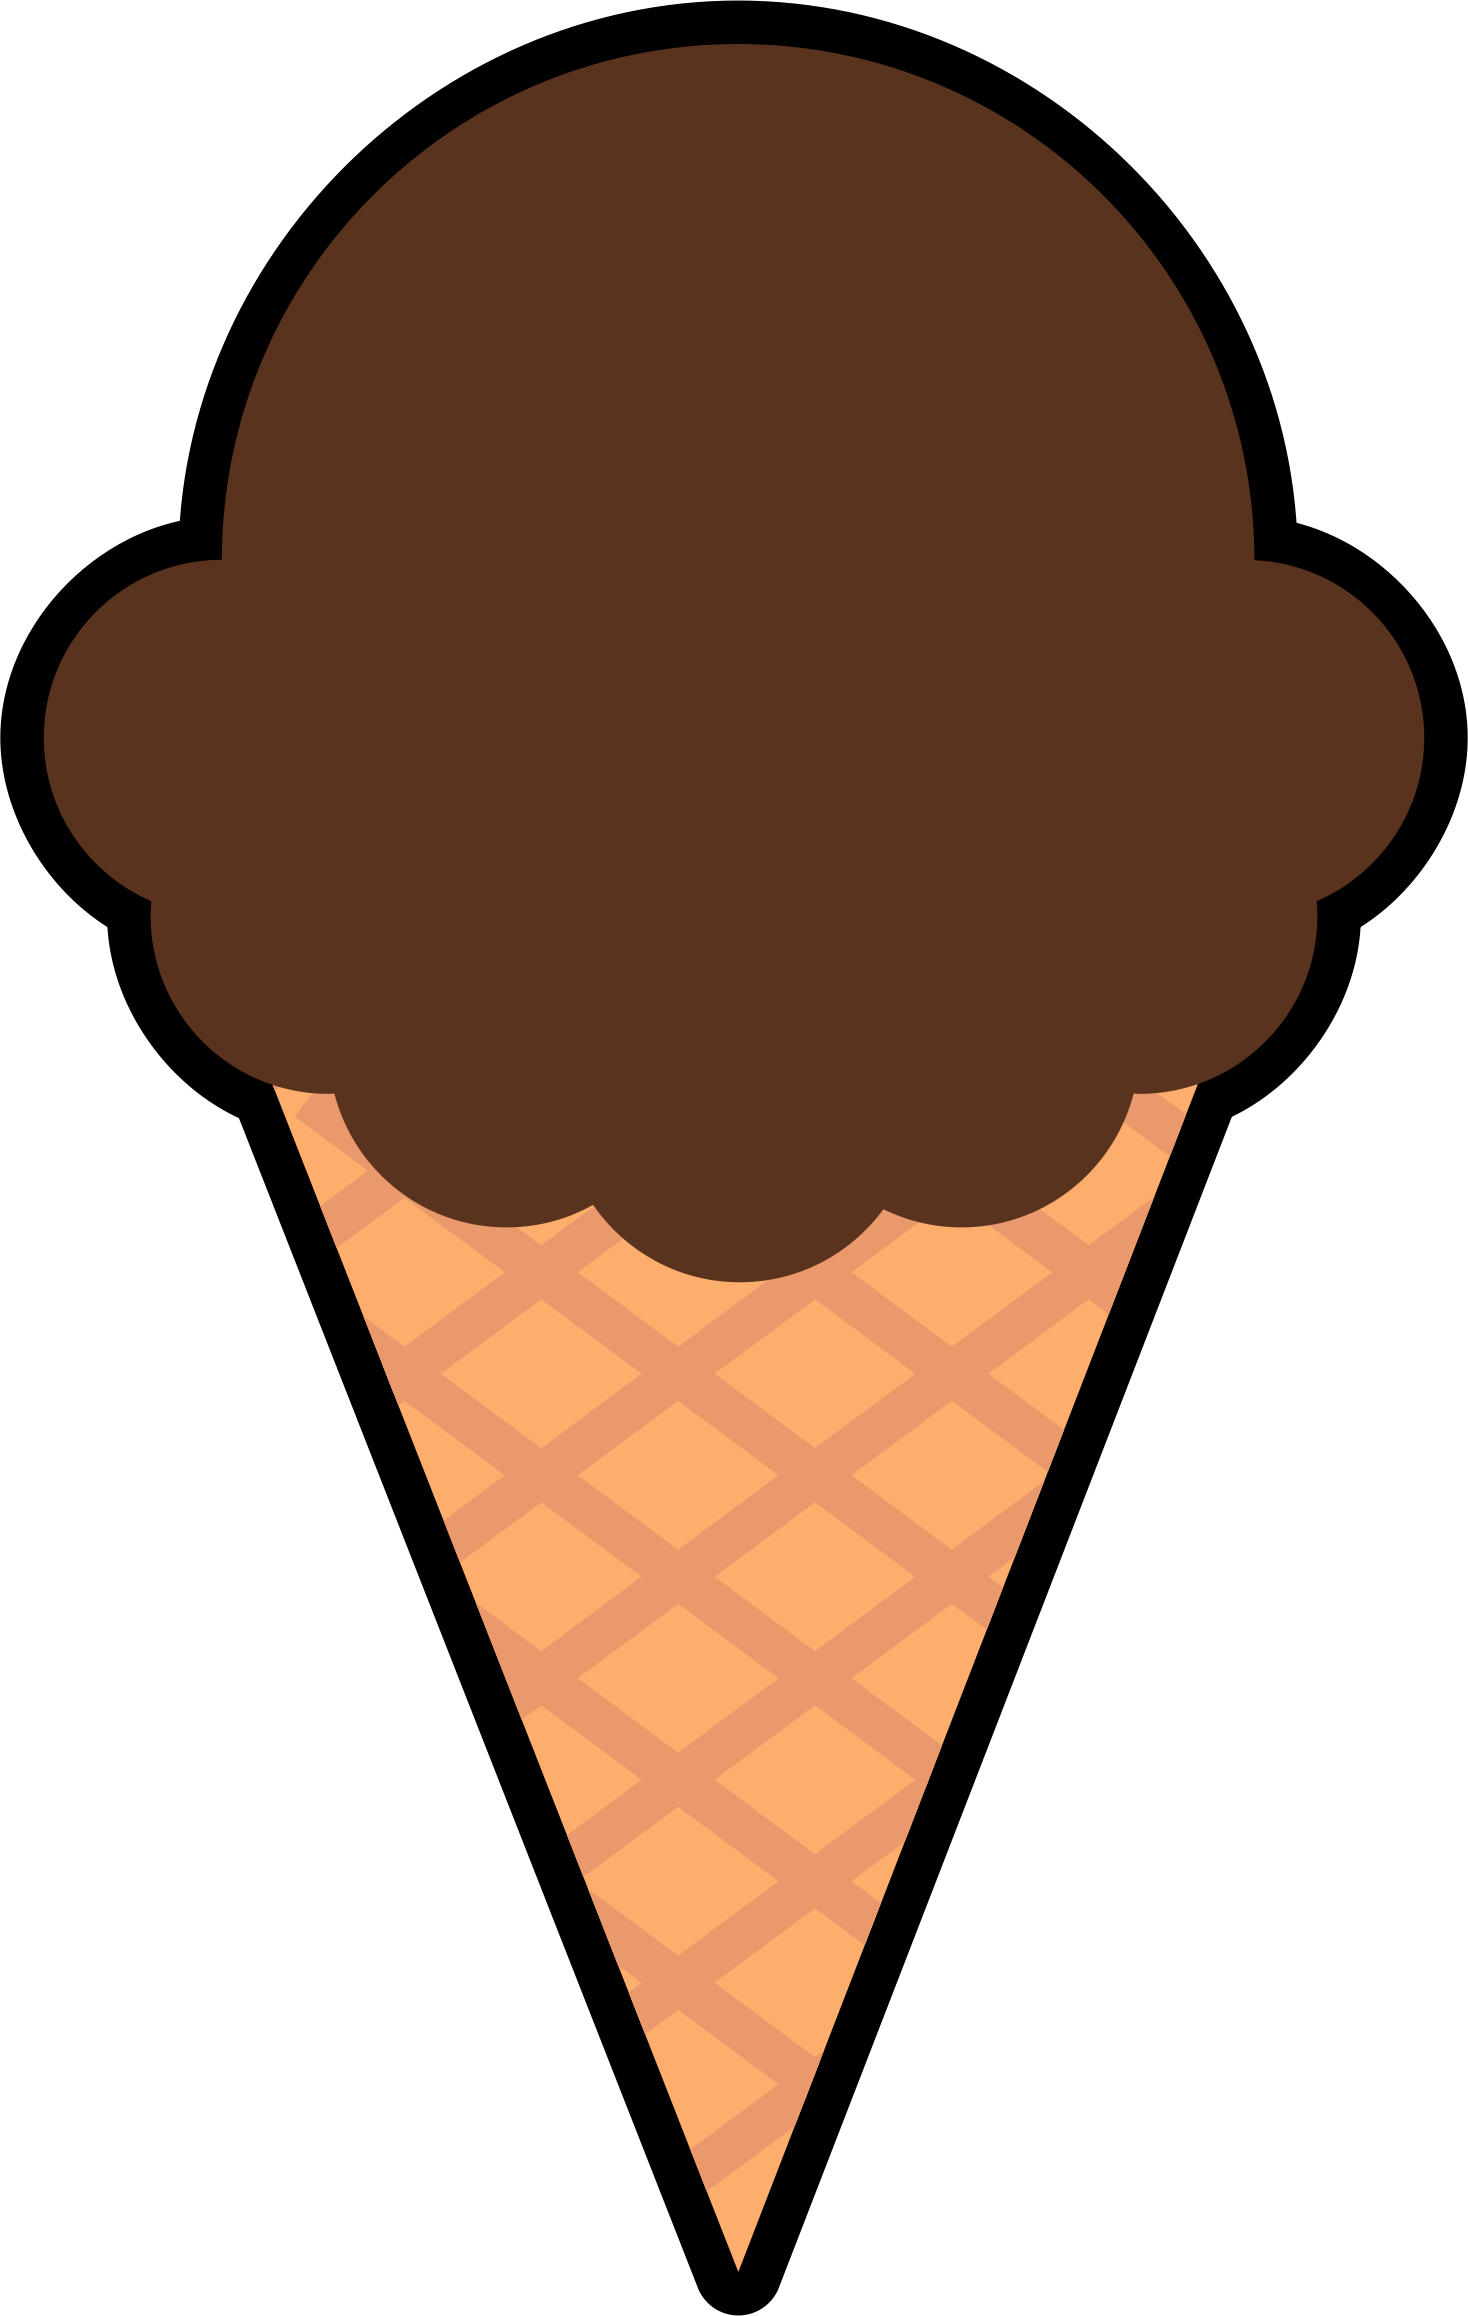 vanilla ice cream cone clipart - photo #24